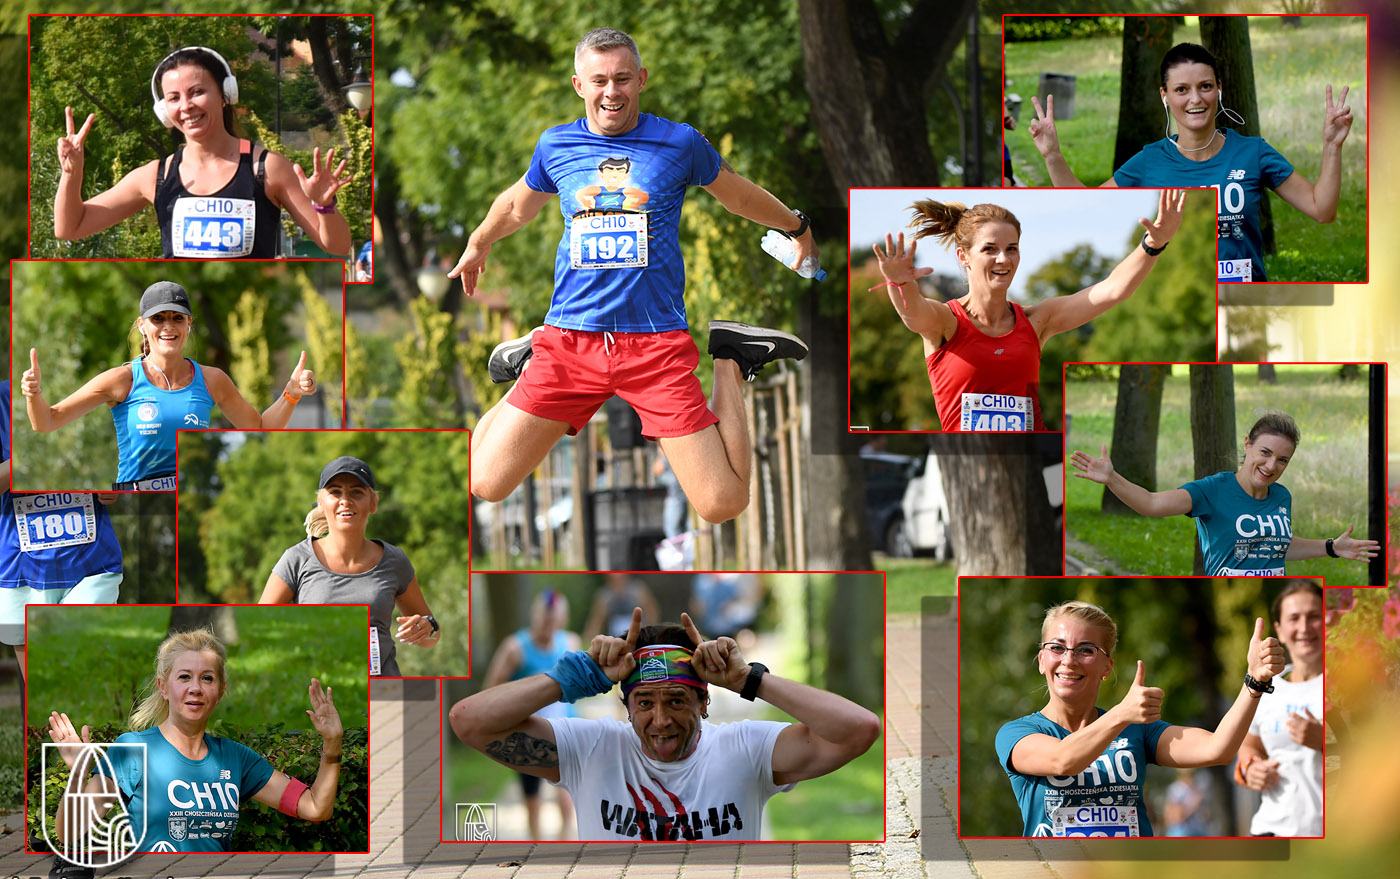 biegacze biorący udział w Choszczeńskiej Dziesiątce